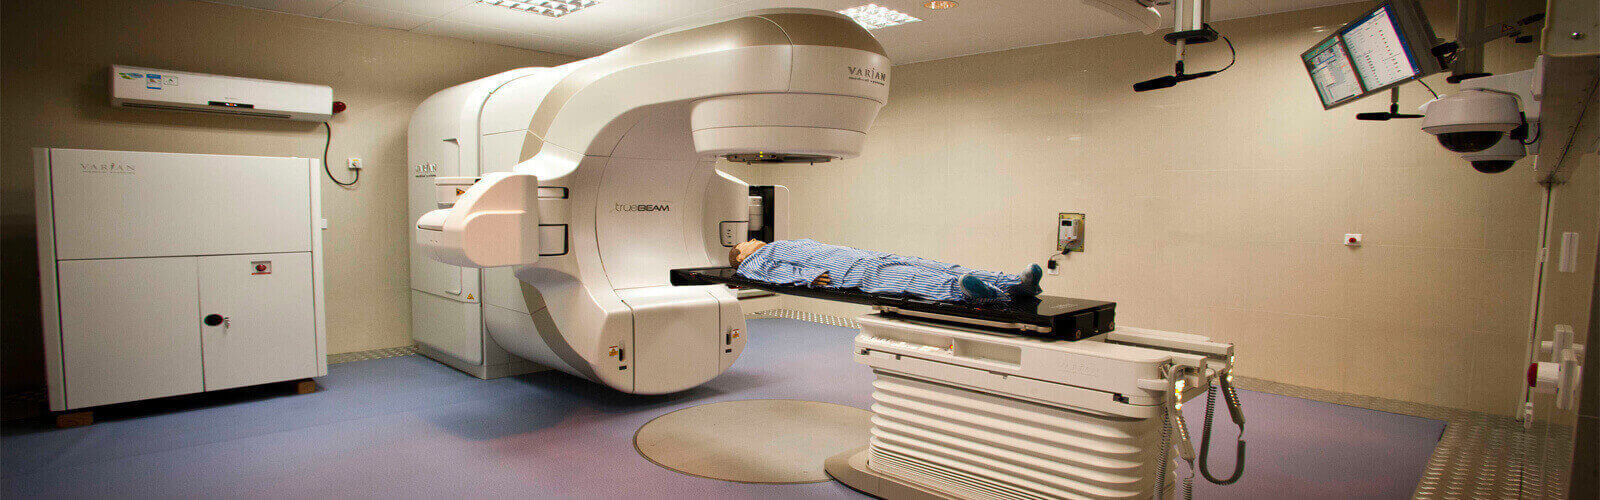 Radiotherapy in Denmark